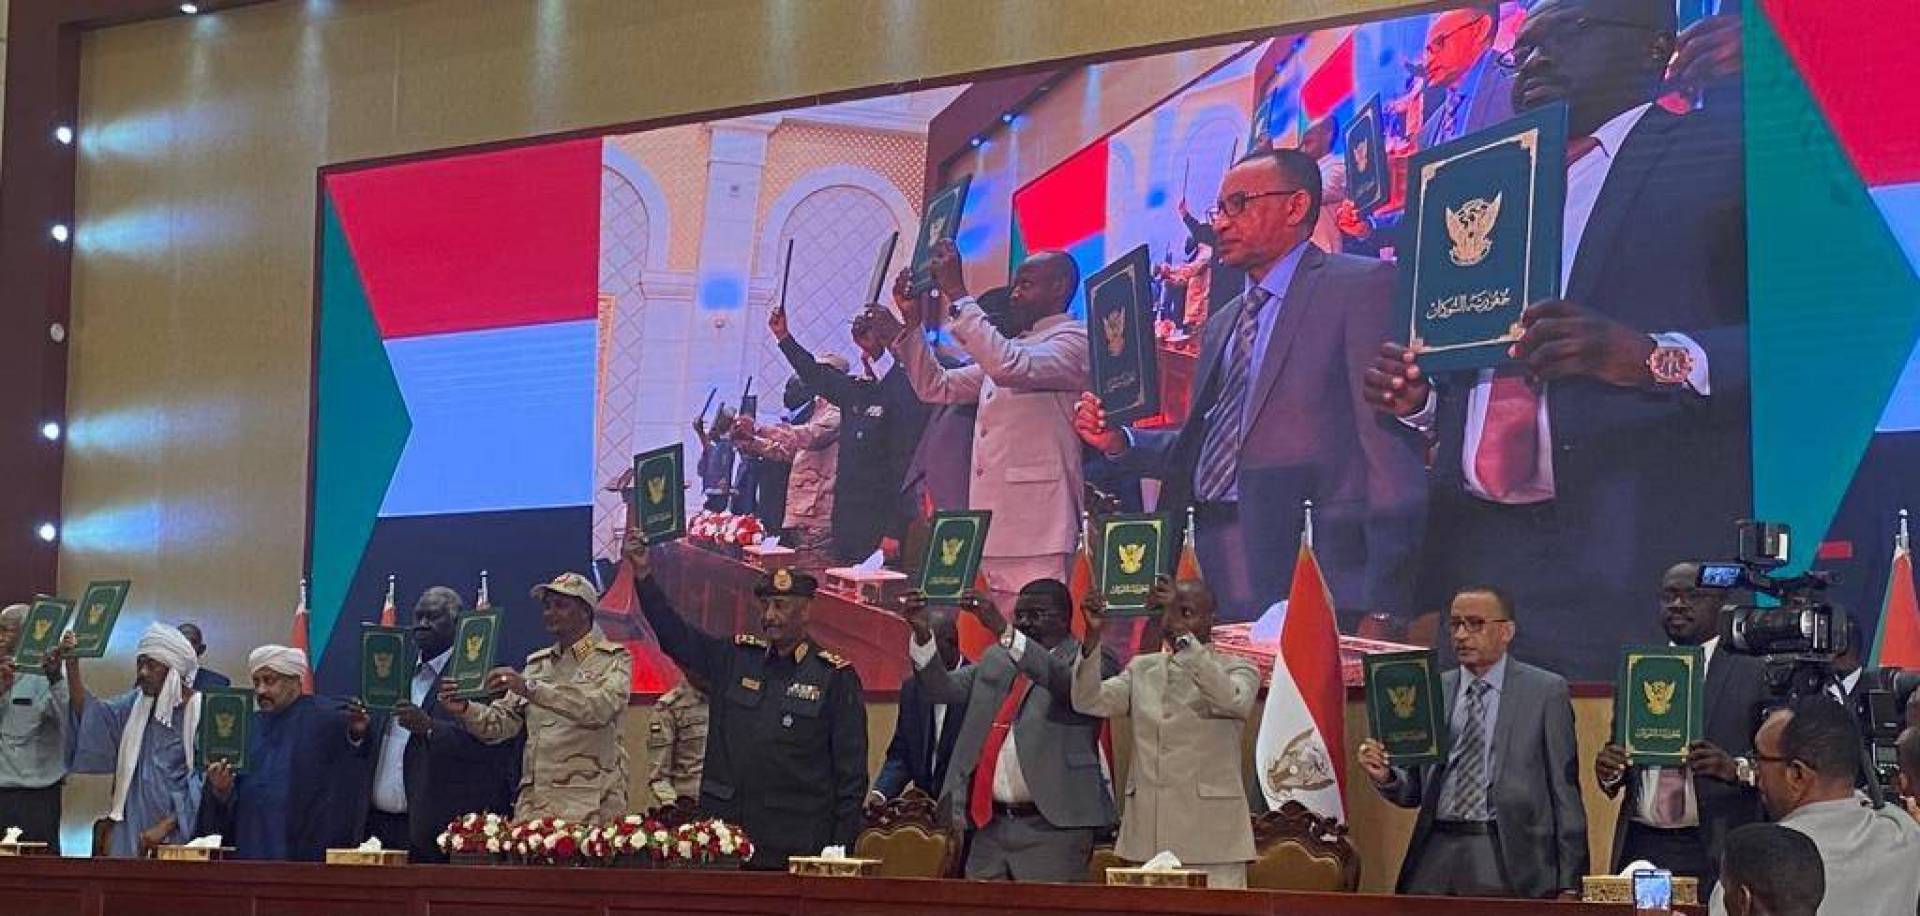 الجيش خارج الحياة السياسية... التوقيع على اتفاق إطاري في السودان